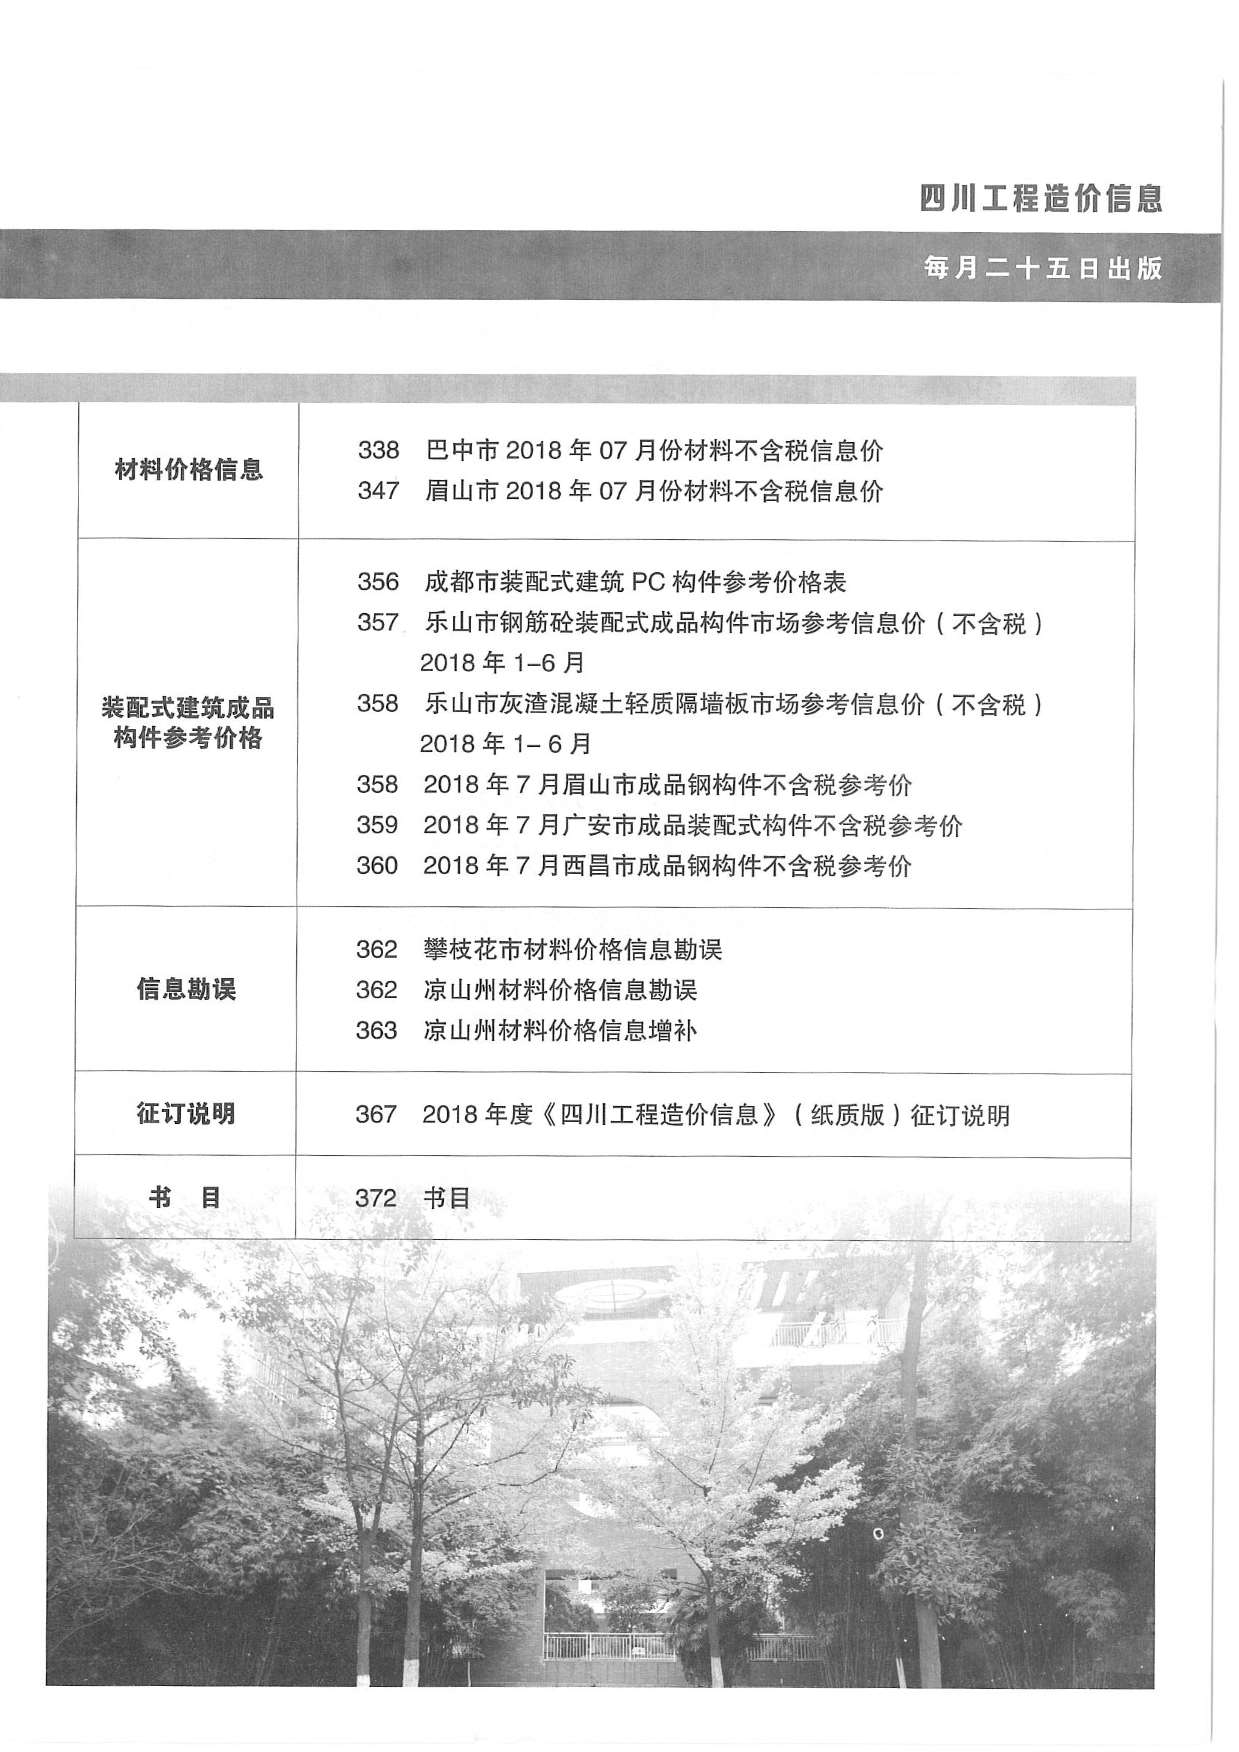 四川省2018年8月工程信息价_四川省信息价期刊PDF扫描件电子版